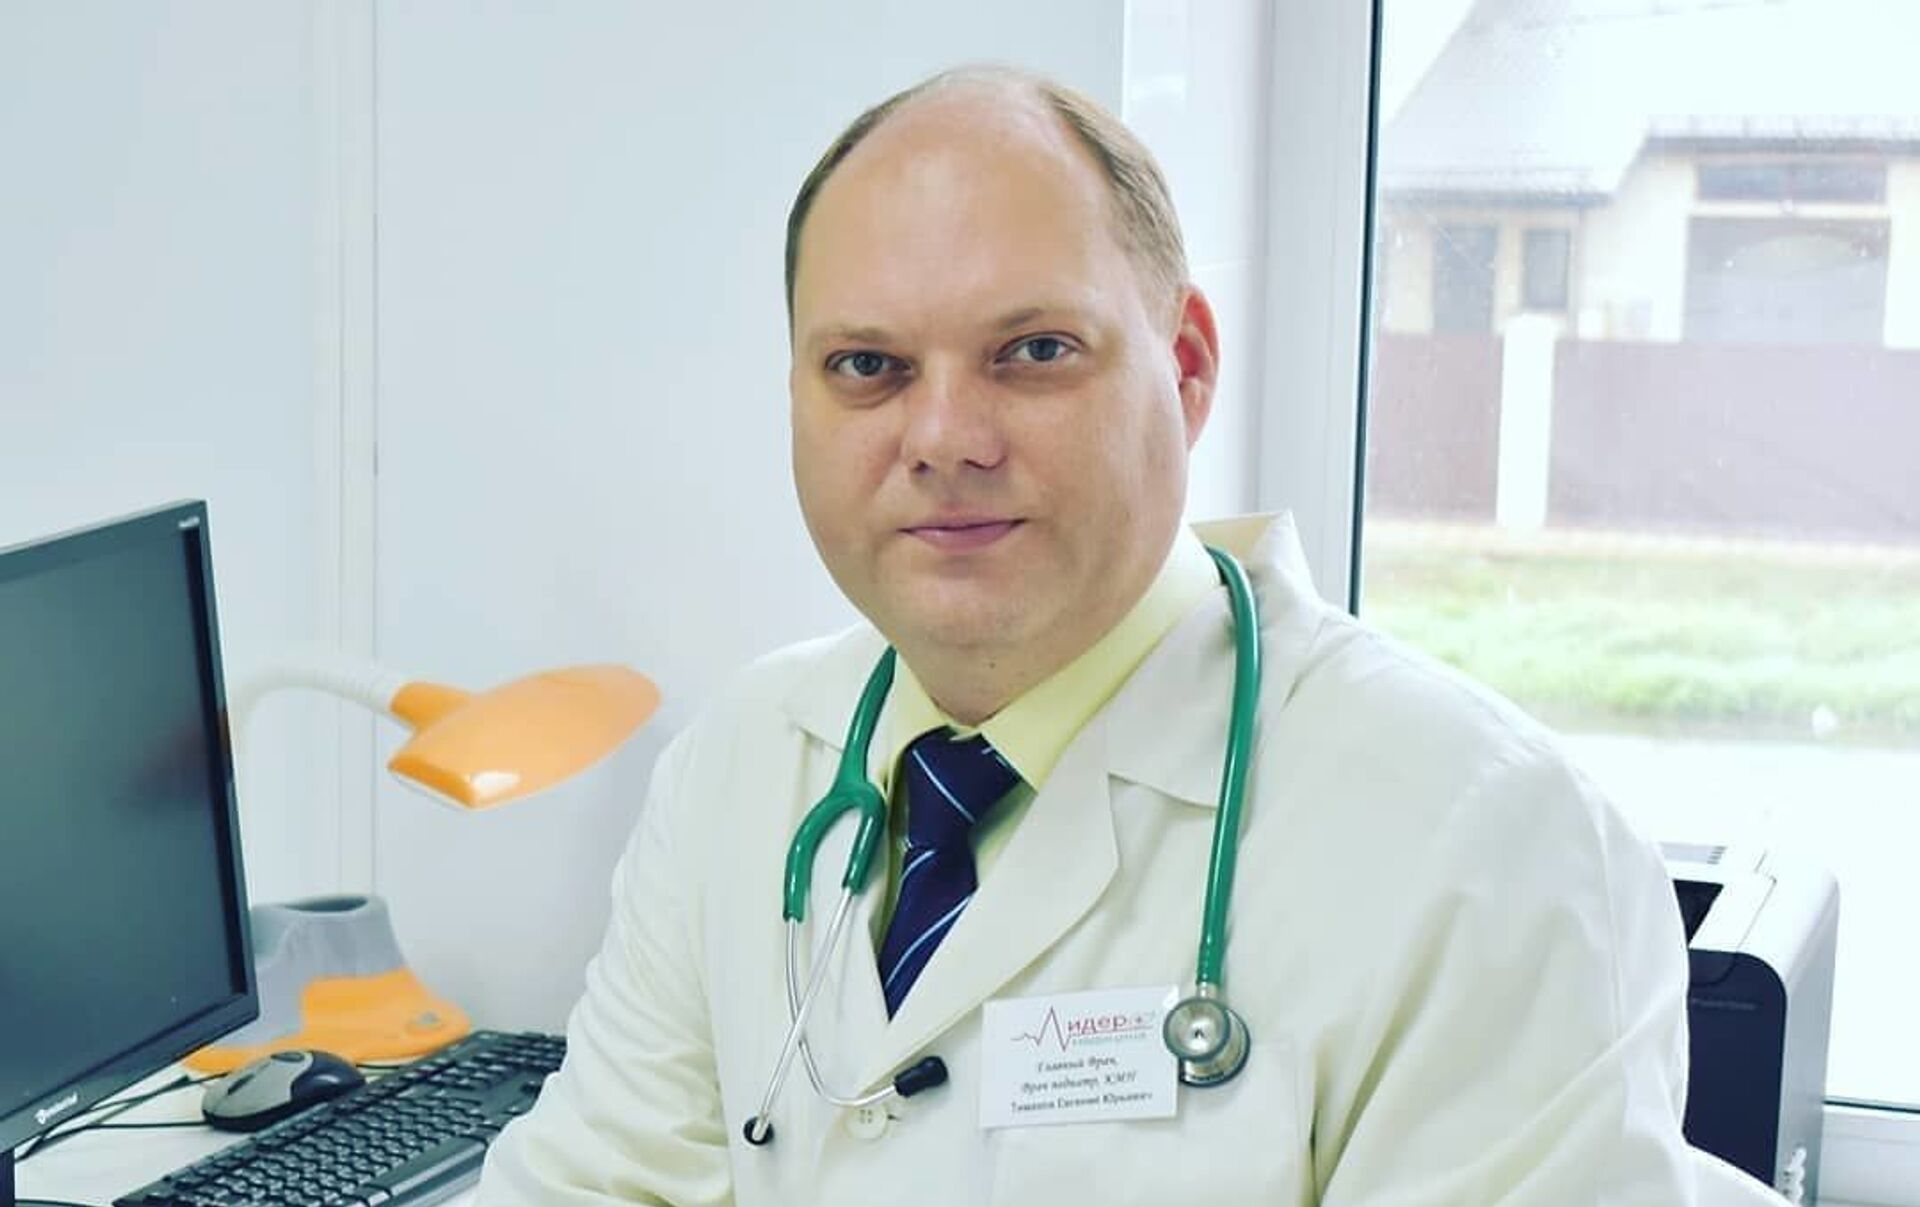 Евгений Тимаков, главный врач медицинского центра «Лидер медицина», врач-инфекционист, педиатр, кандидат медицинских наук